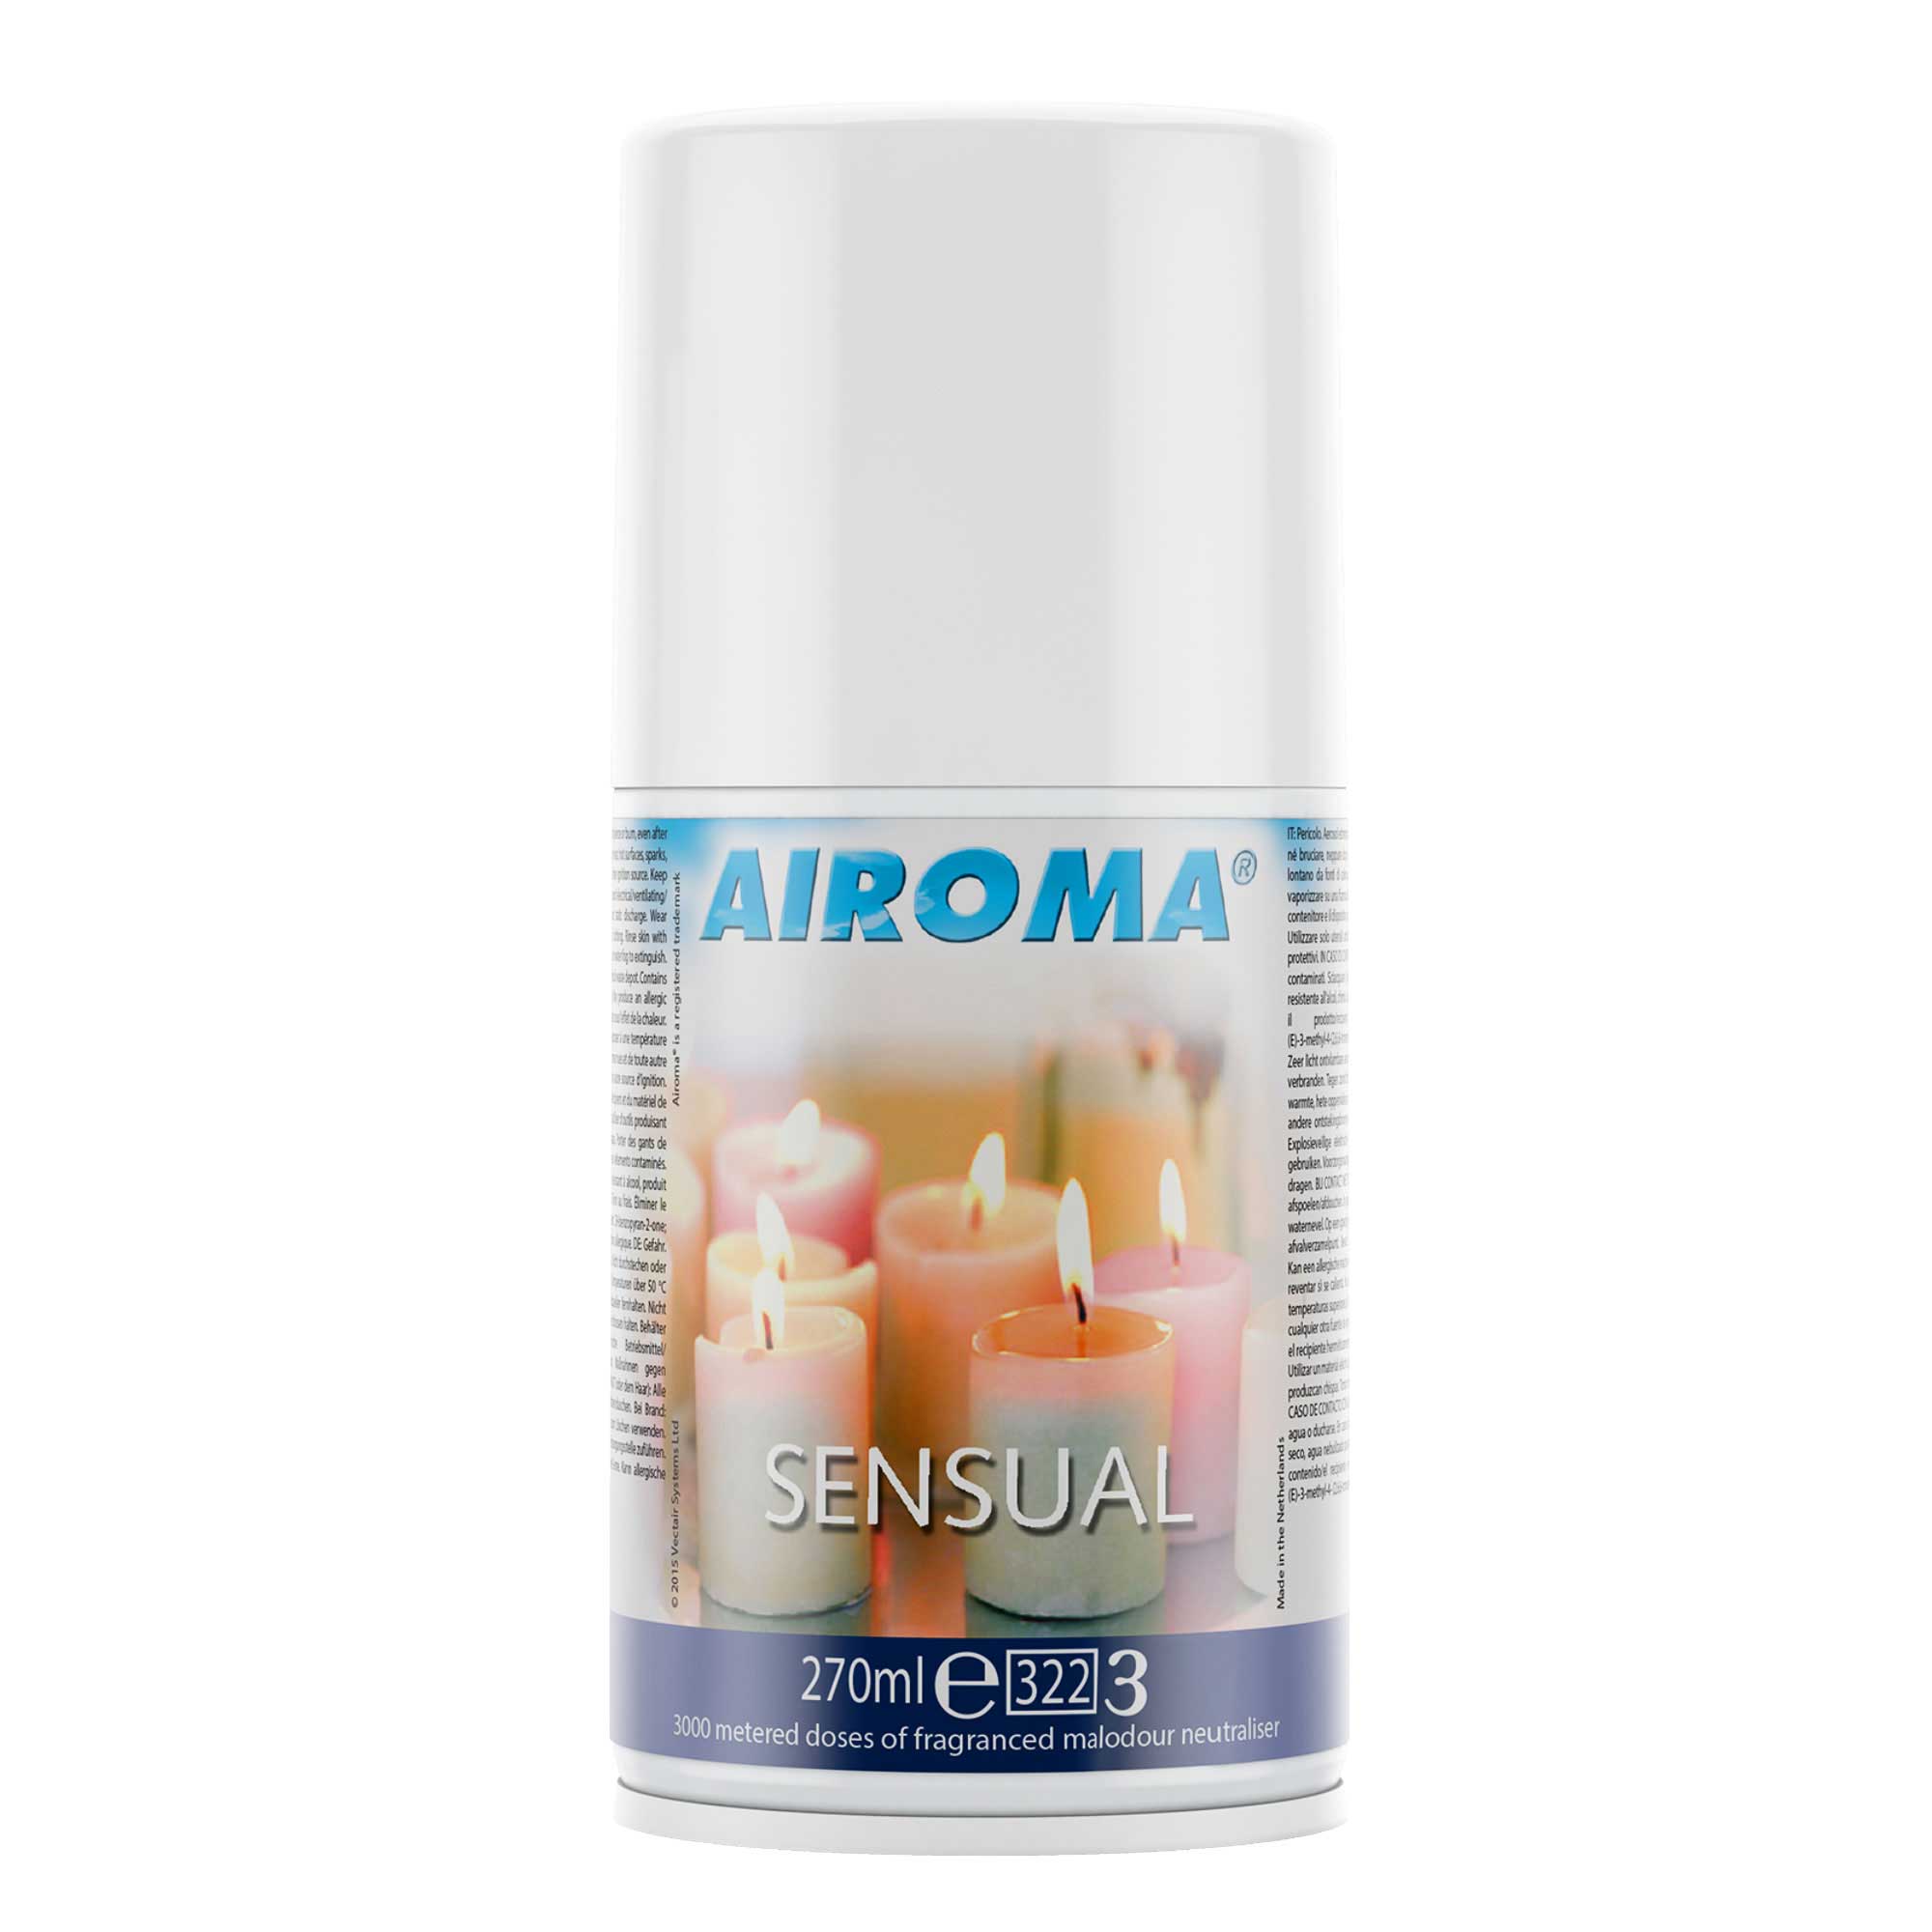 Airoma® Sensual Refill